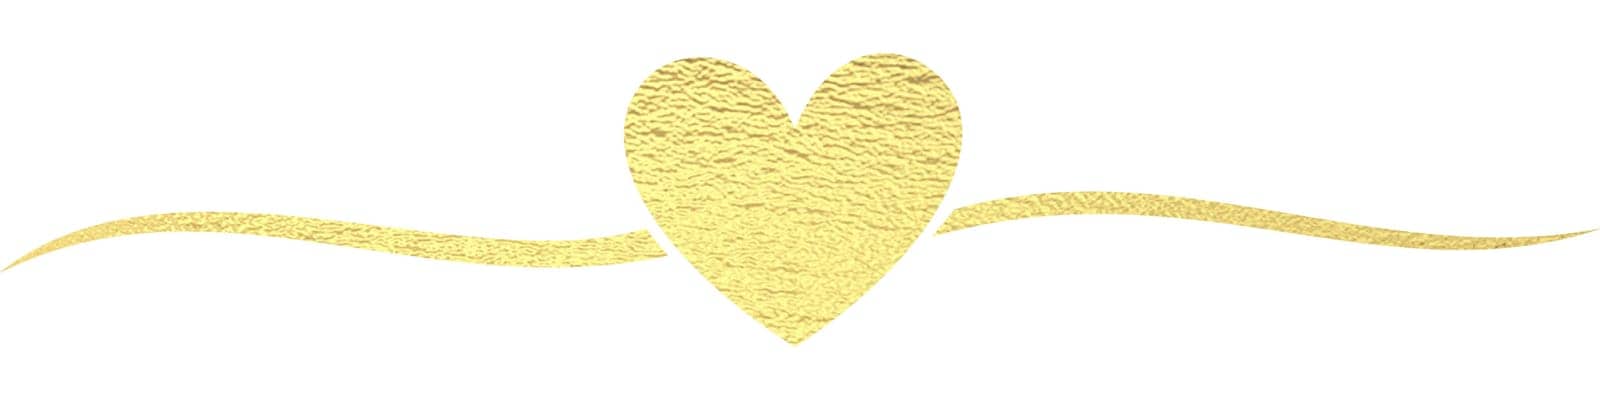 golden heart by manudoodle